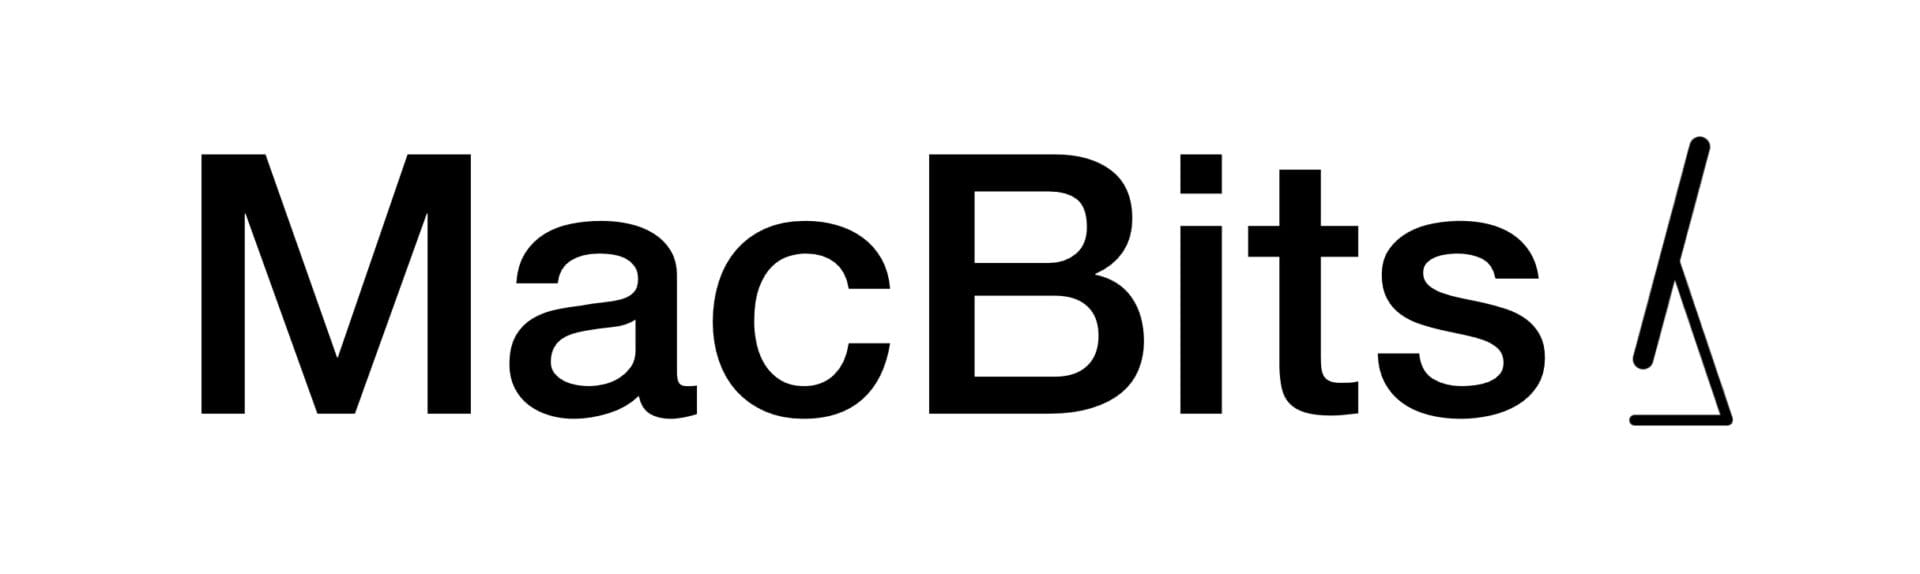 MacBits Logo White background